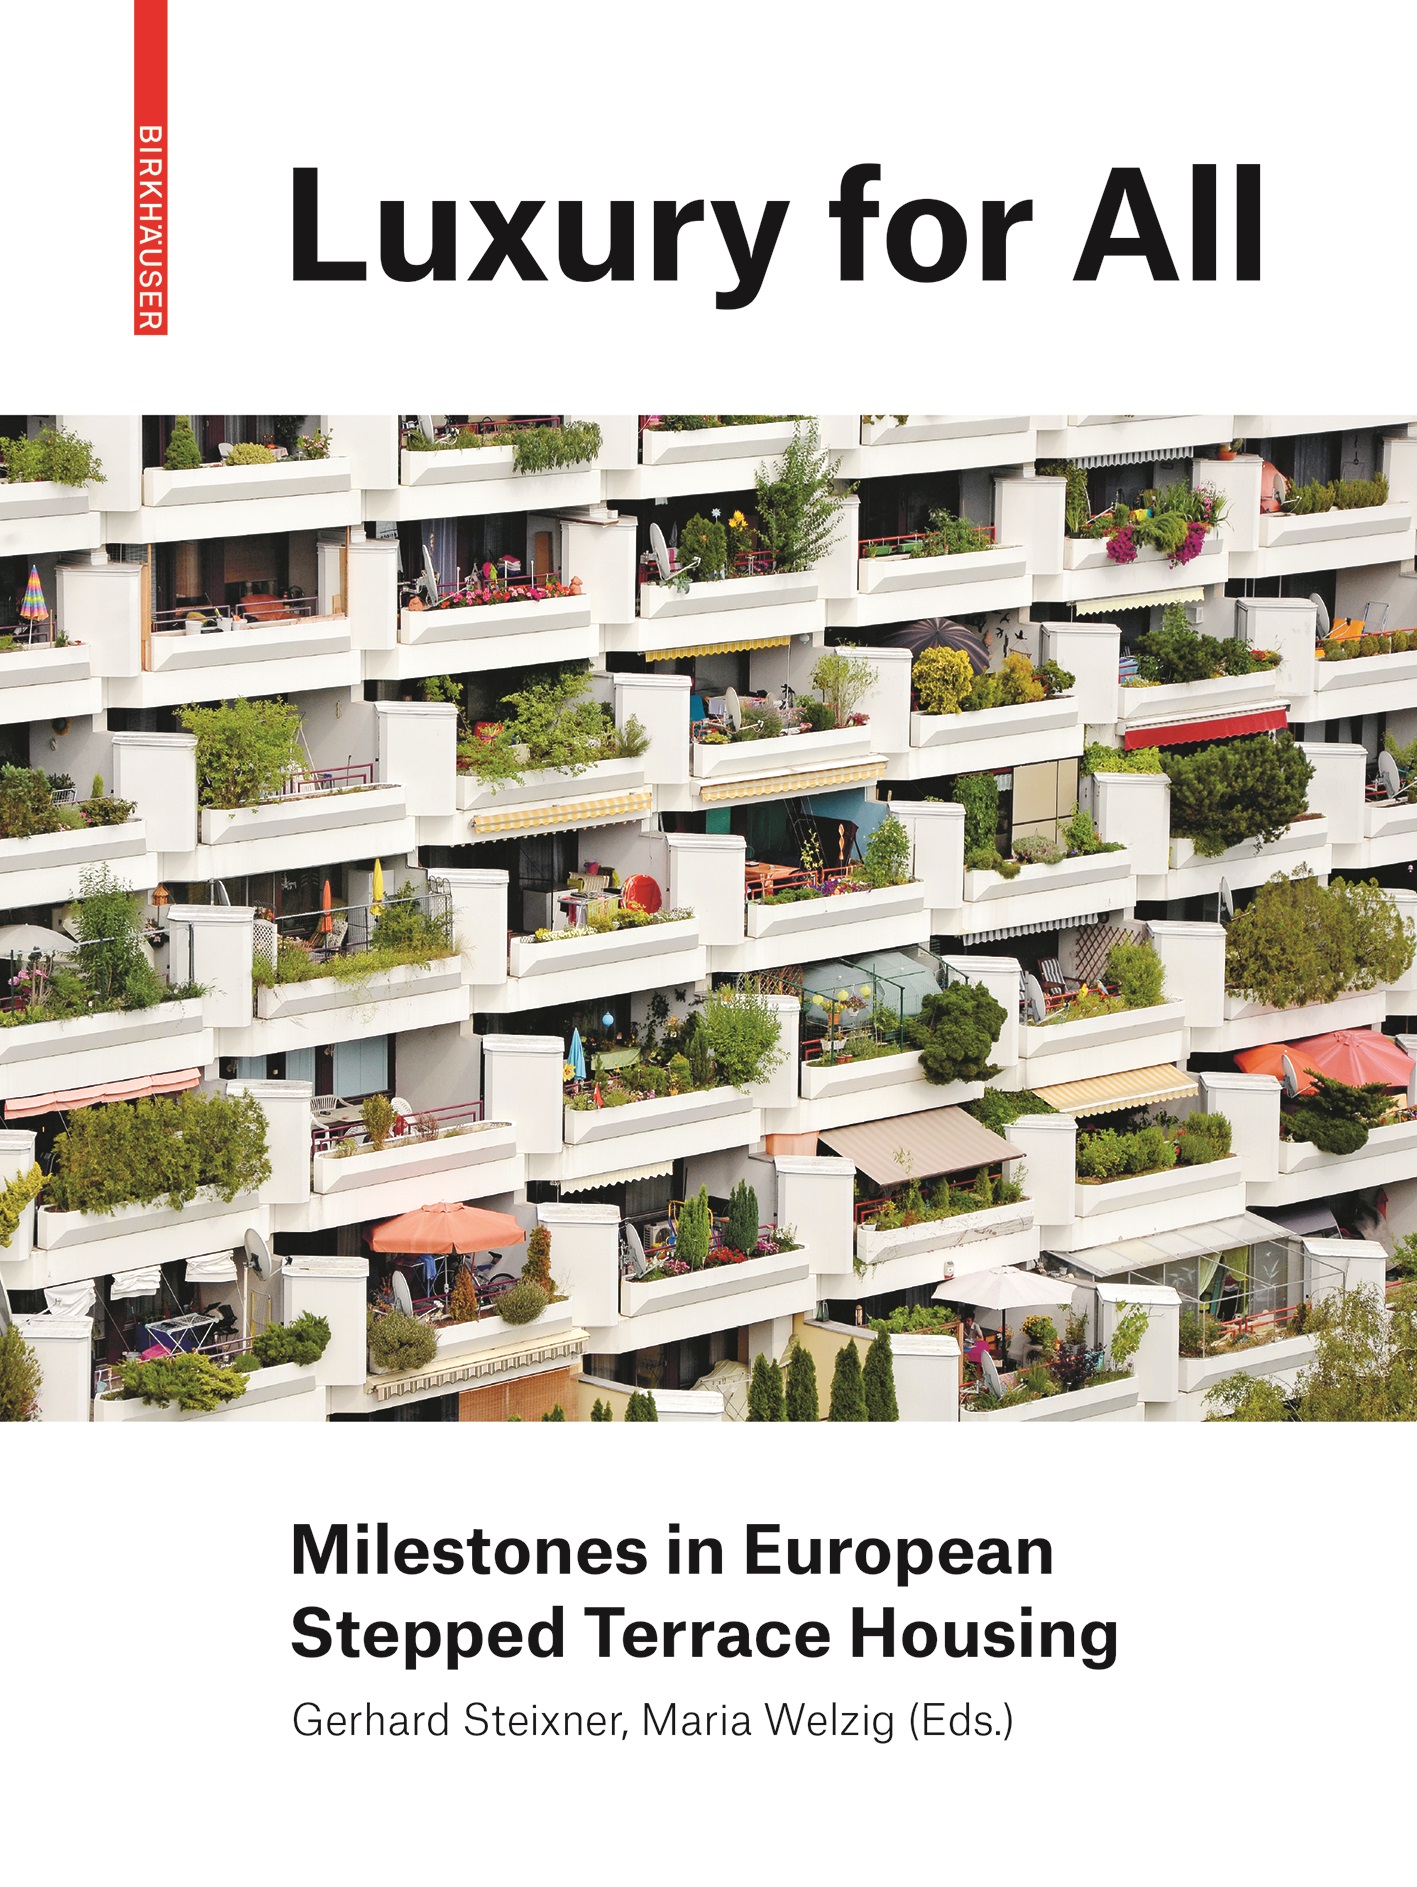 BDT_26 – Luxury for All – Milestones in European Stepped Terrace Housing